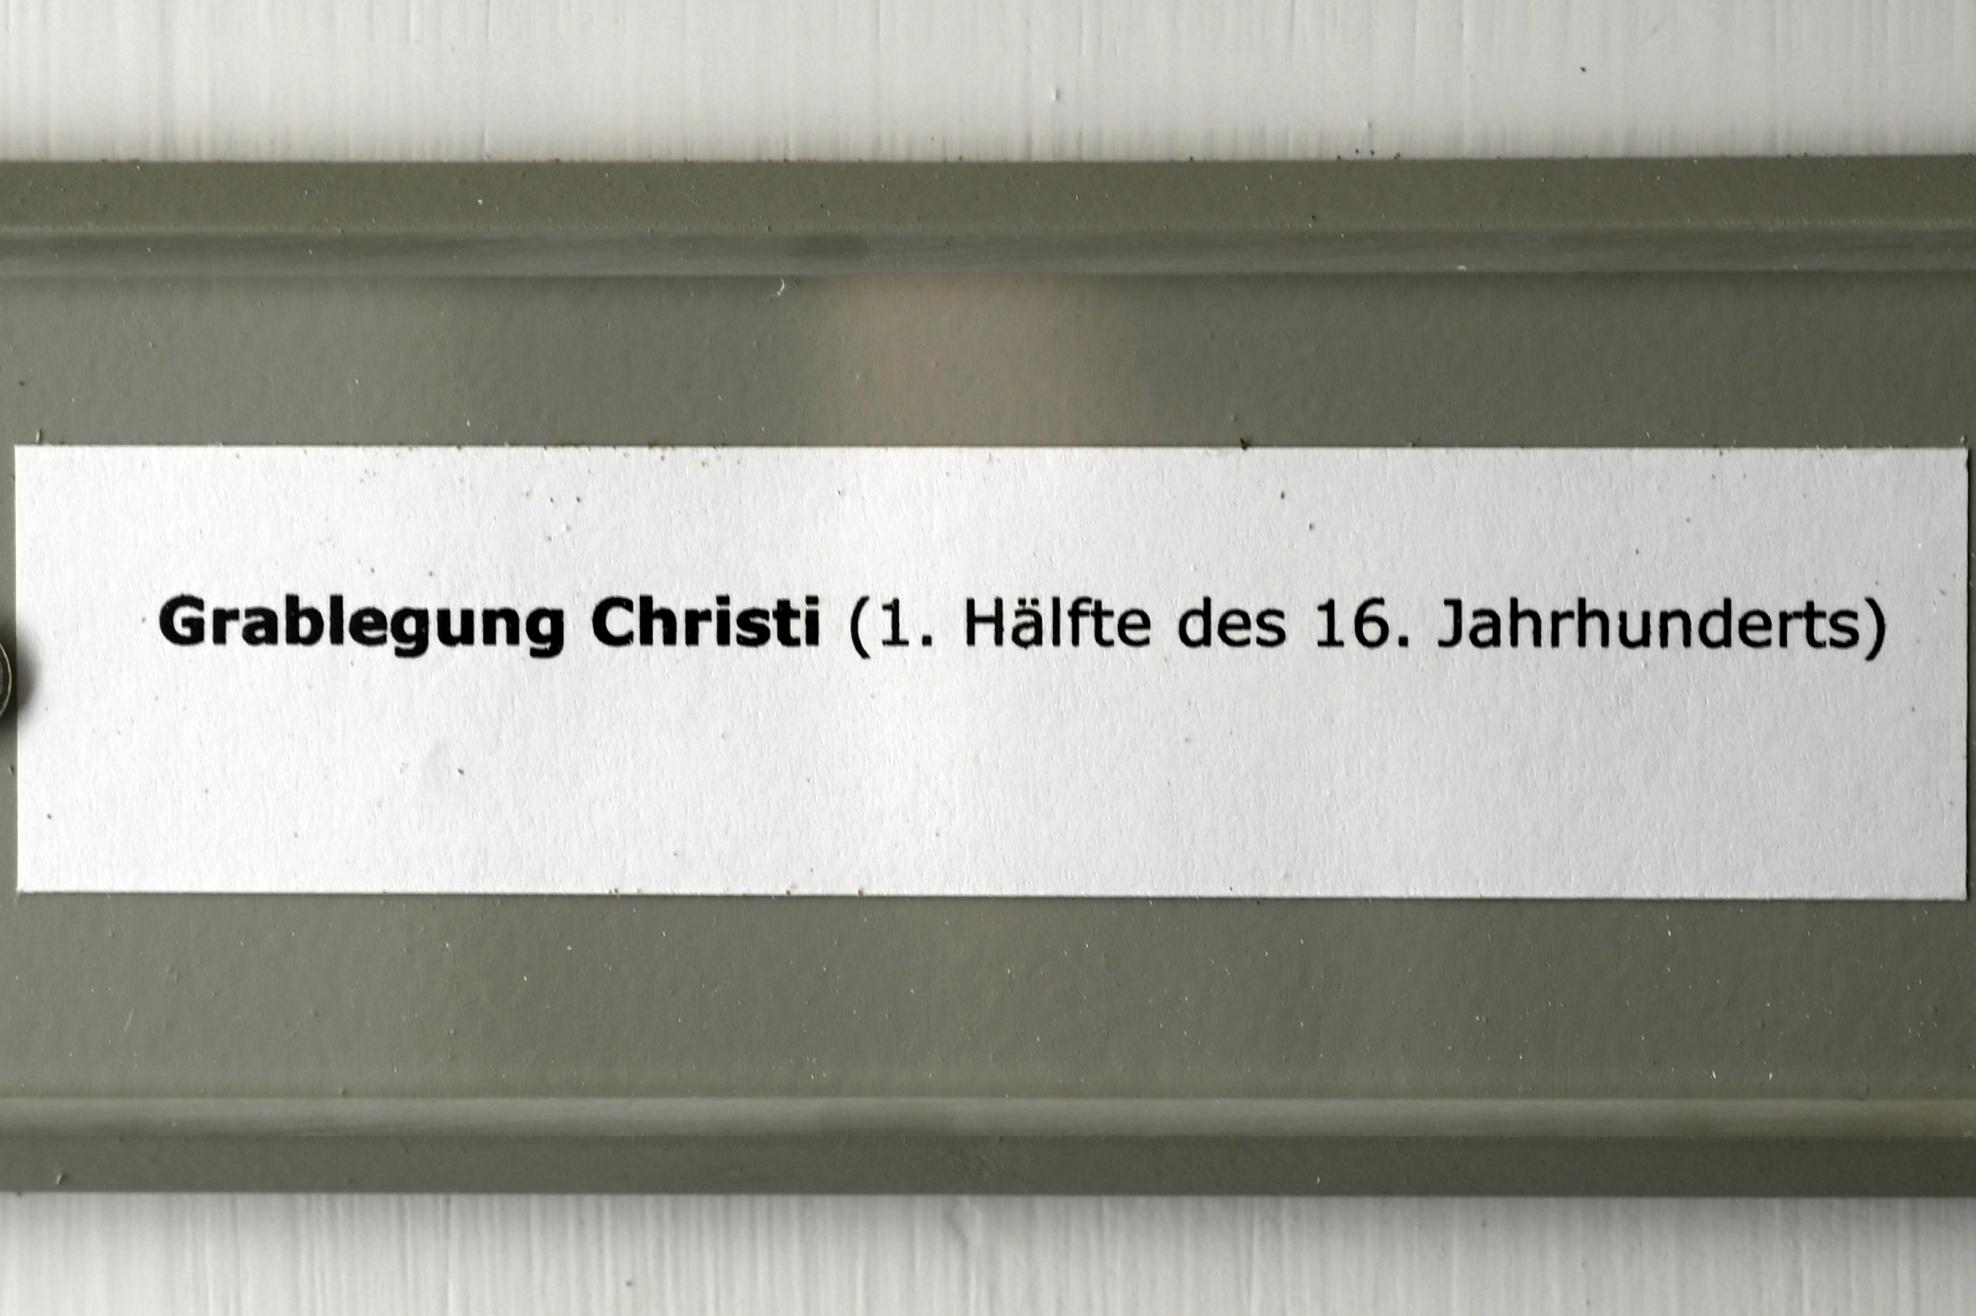 Grablegung Christi, Überlingen, Städtisches Museum, Gotisches Zimmer, 1. Hälfte 16. Jhd., Bild 2/2